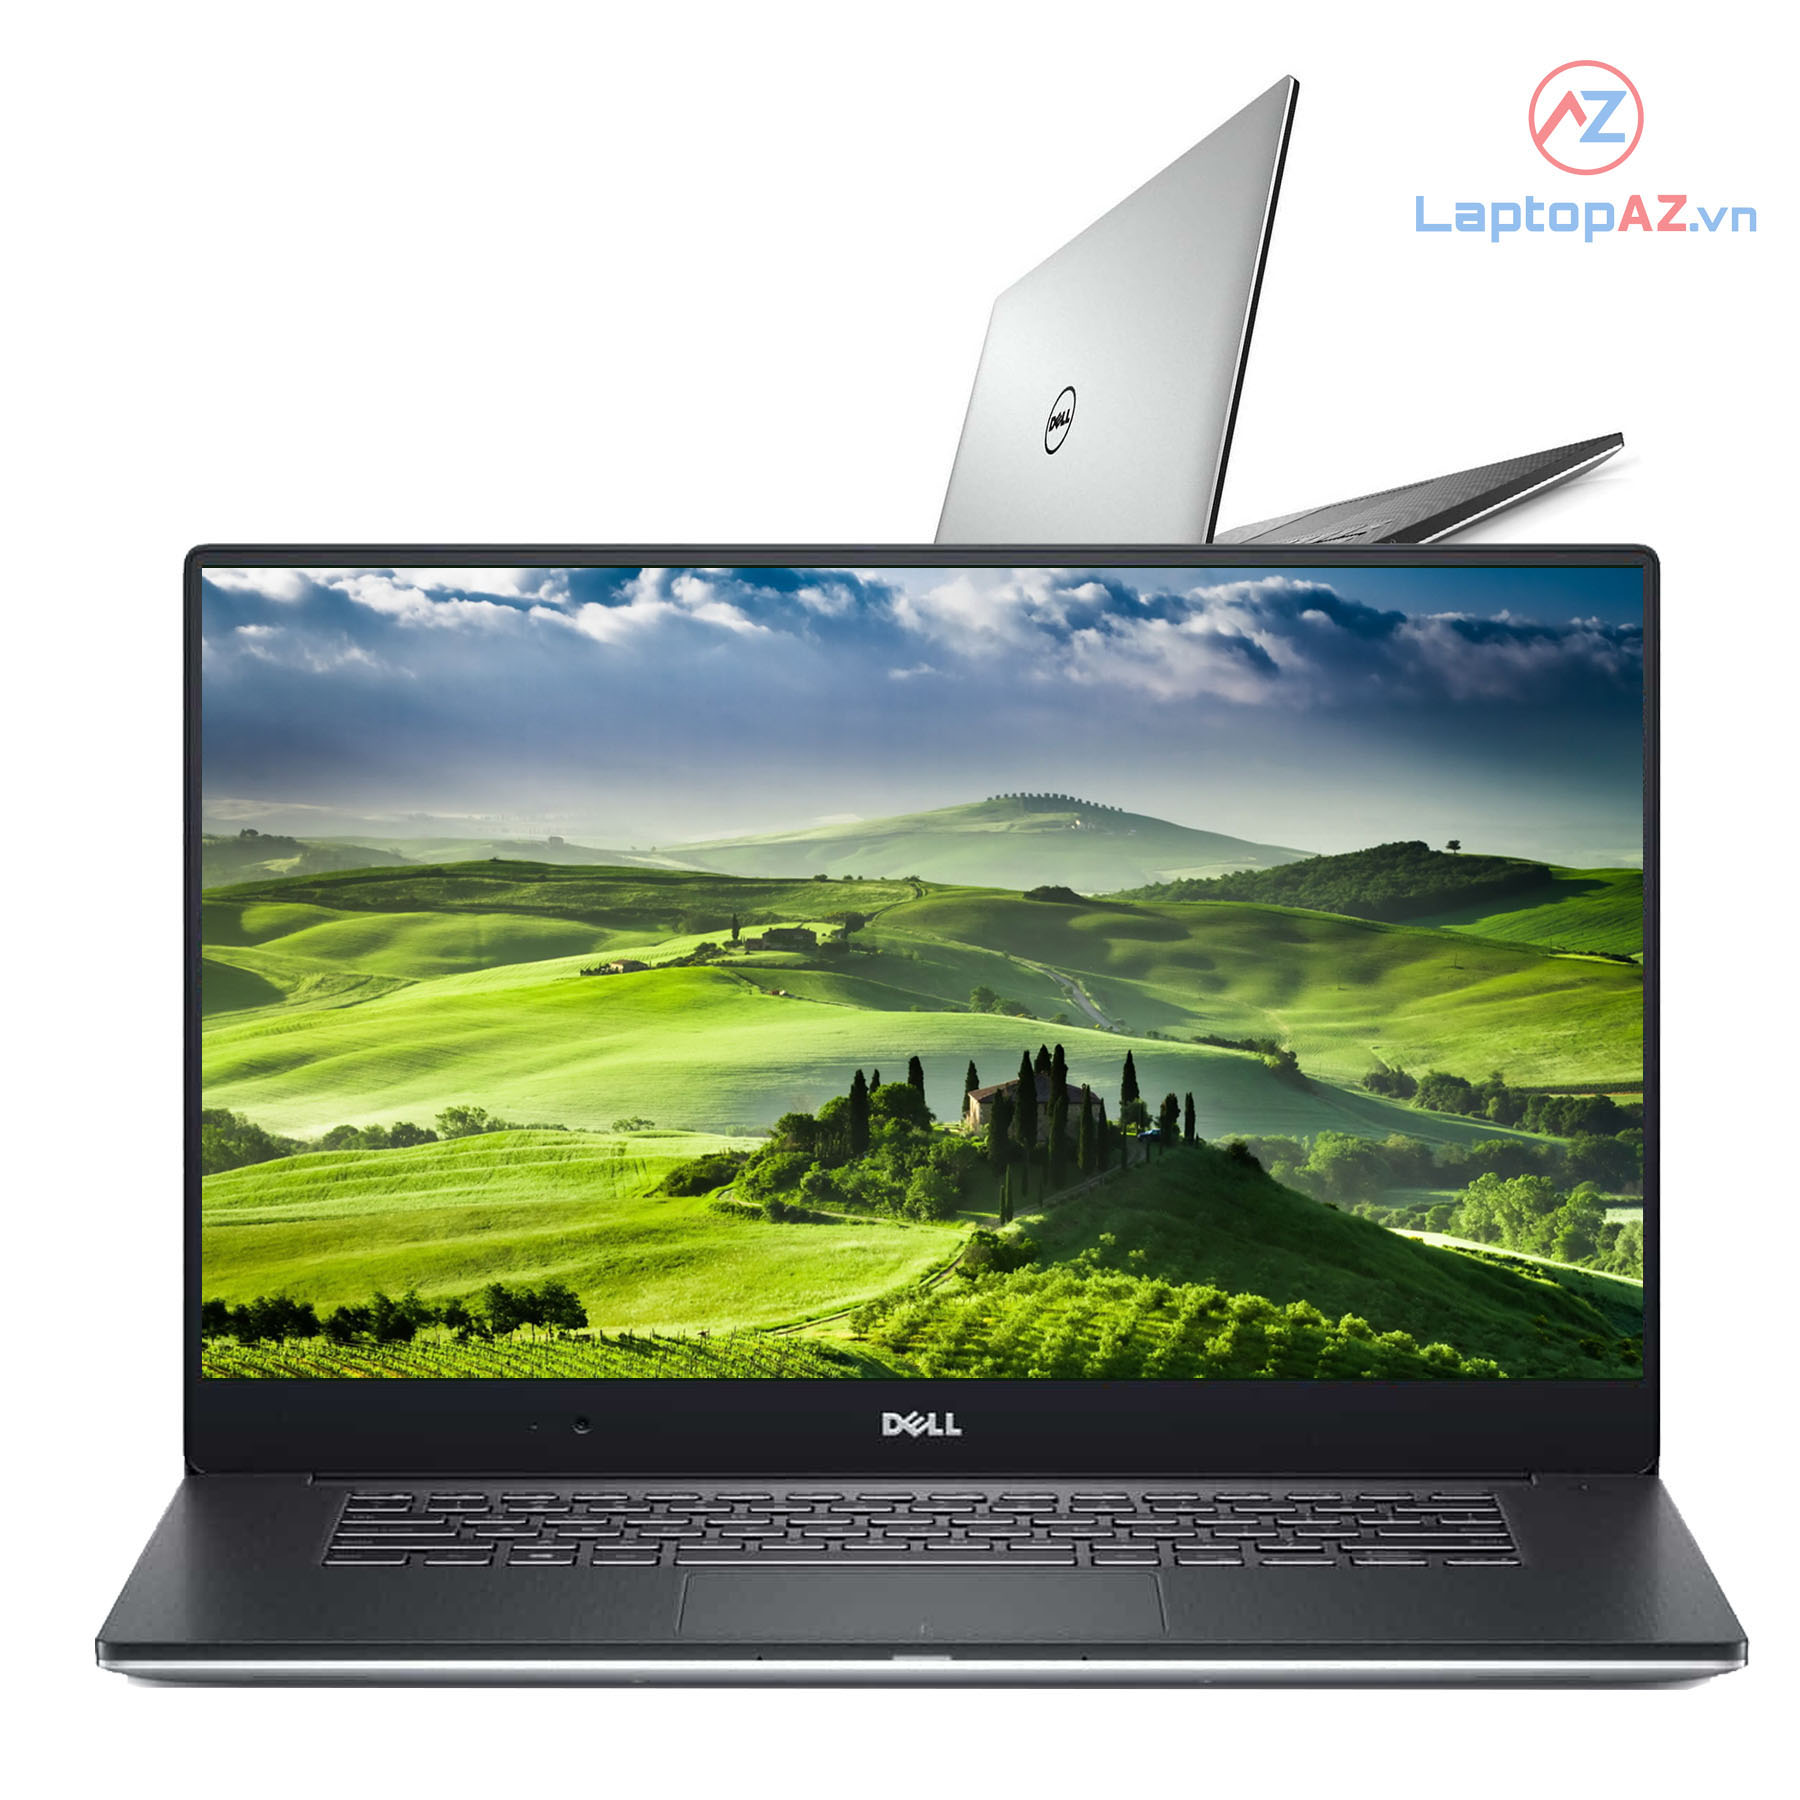 Với Dell Precision 5510, bạn sẽ được trải nghiệm những tính năng tuyệt vời của một chiếc laptop cũ nhưng vẫn đáp ứng được công việc văn phòng hay thậm chí chơi game. Chiếc laptop này sở hữu một thiết kế sang trọng và màn hình đẹp, giúp bạn làm việc một cách hiệu quả hơn.